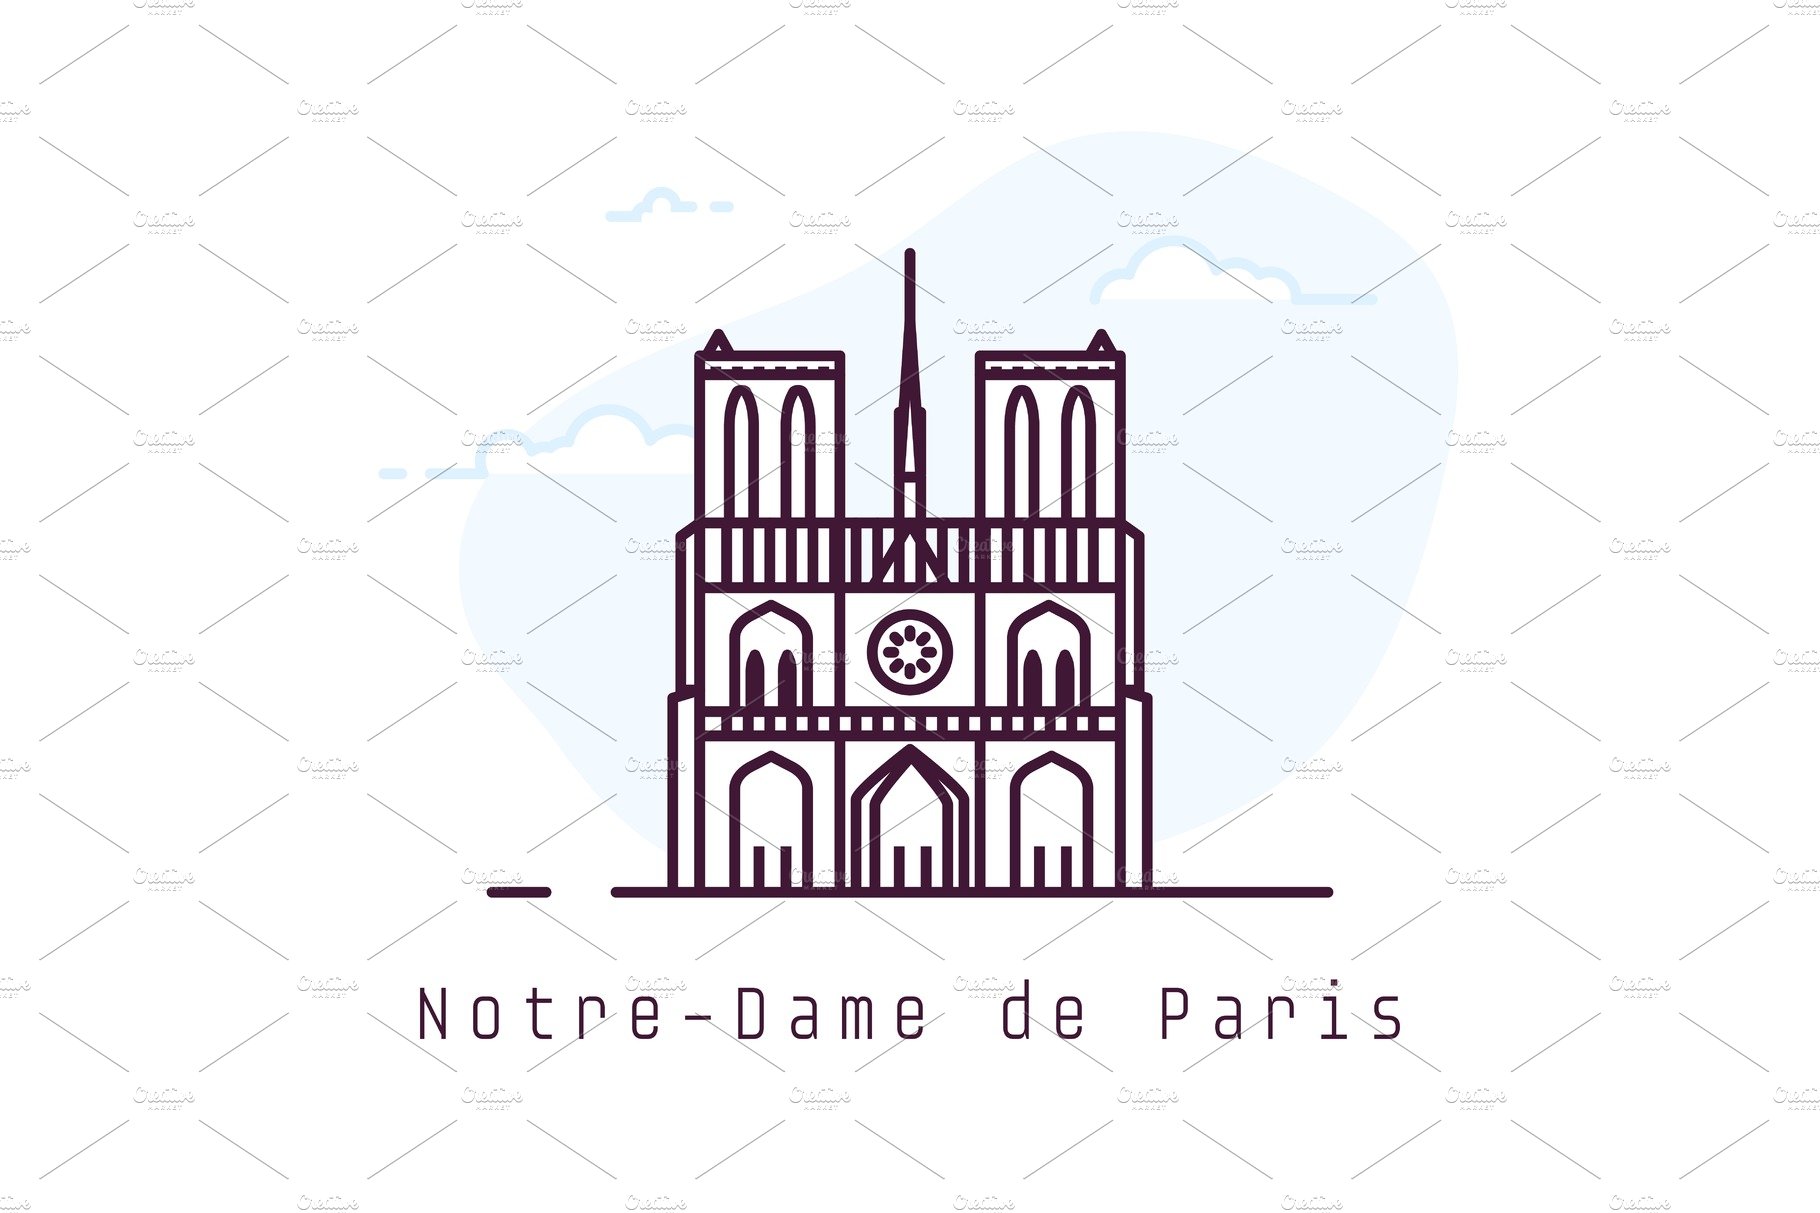 Notre-Dame de Paris cover image.